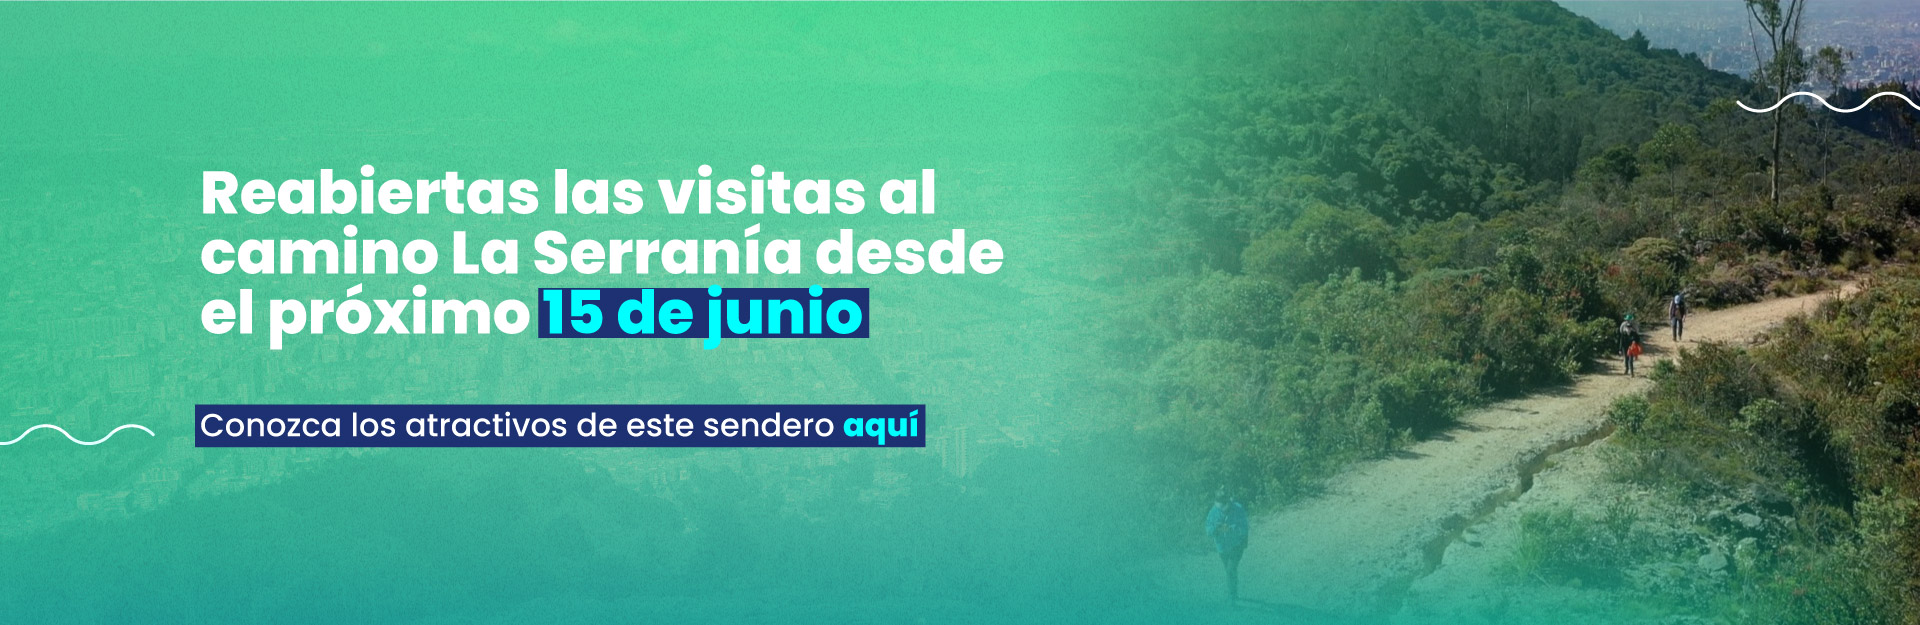 Acueducto reabre las visitas al camino La Serranía el próximo 15 de junio